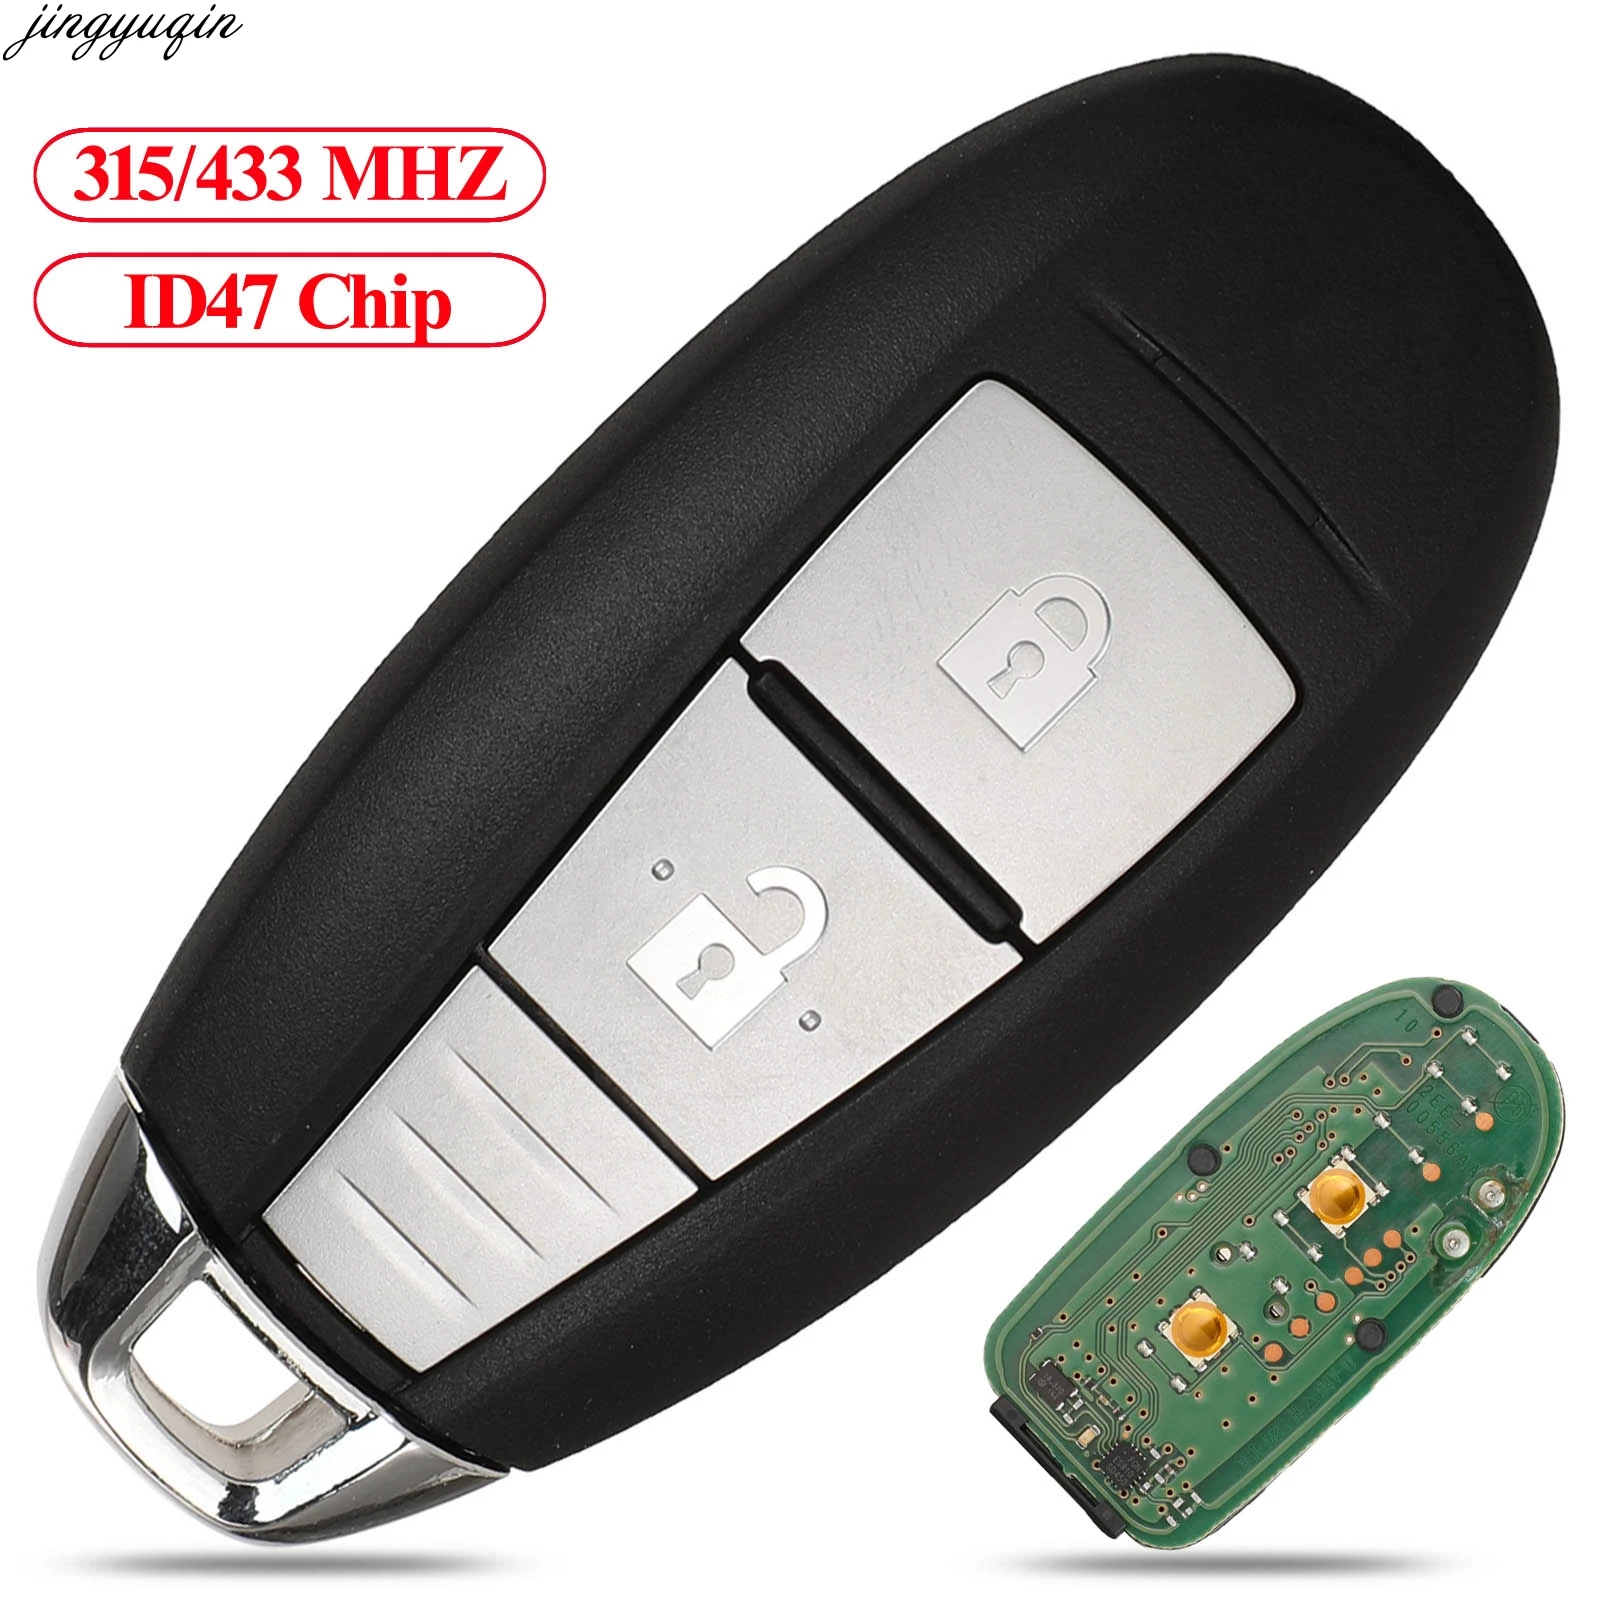 

Jingyuqin Remote Control Car Key 315/433MHZ ID47 Chip For Suzuki 5-CROSS SX4 VITARA SWIFT Original 2 Button Smart Keyless Fob